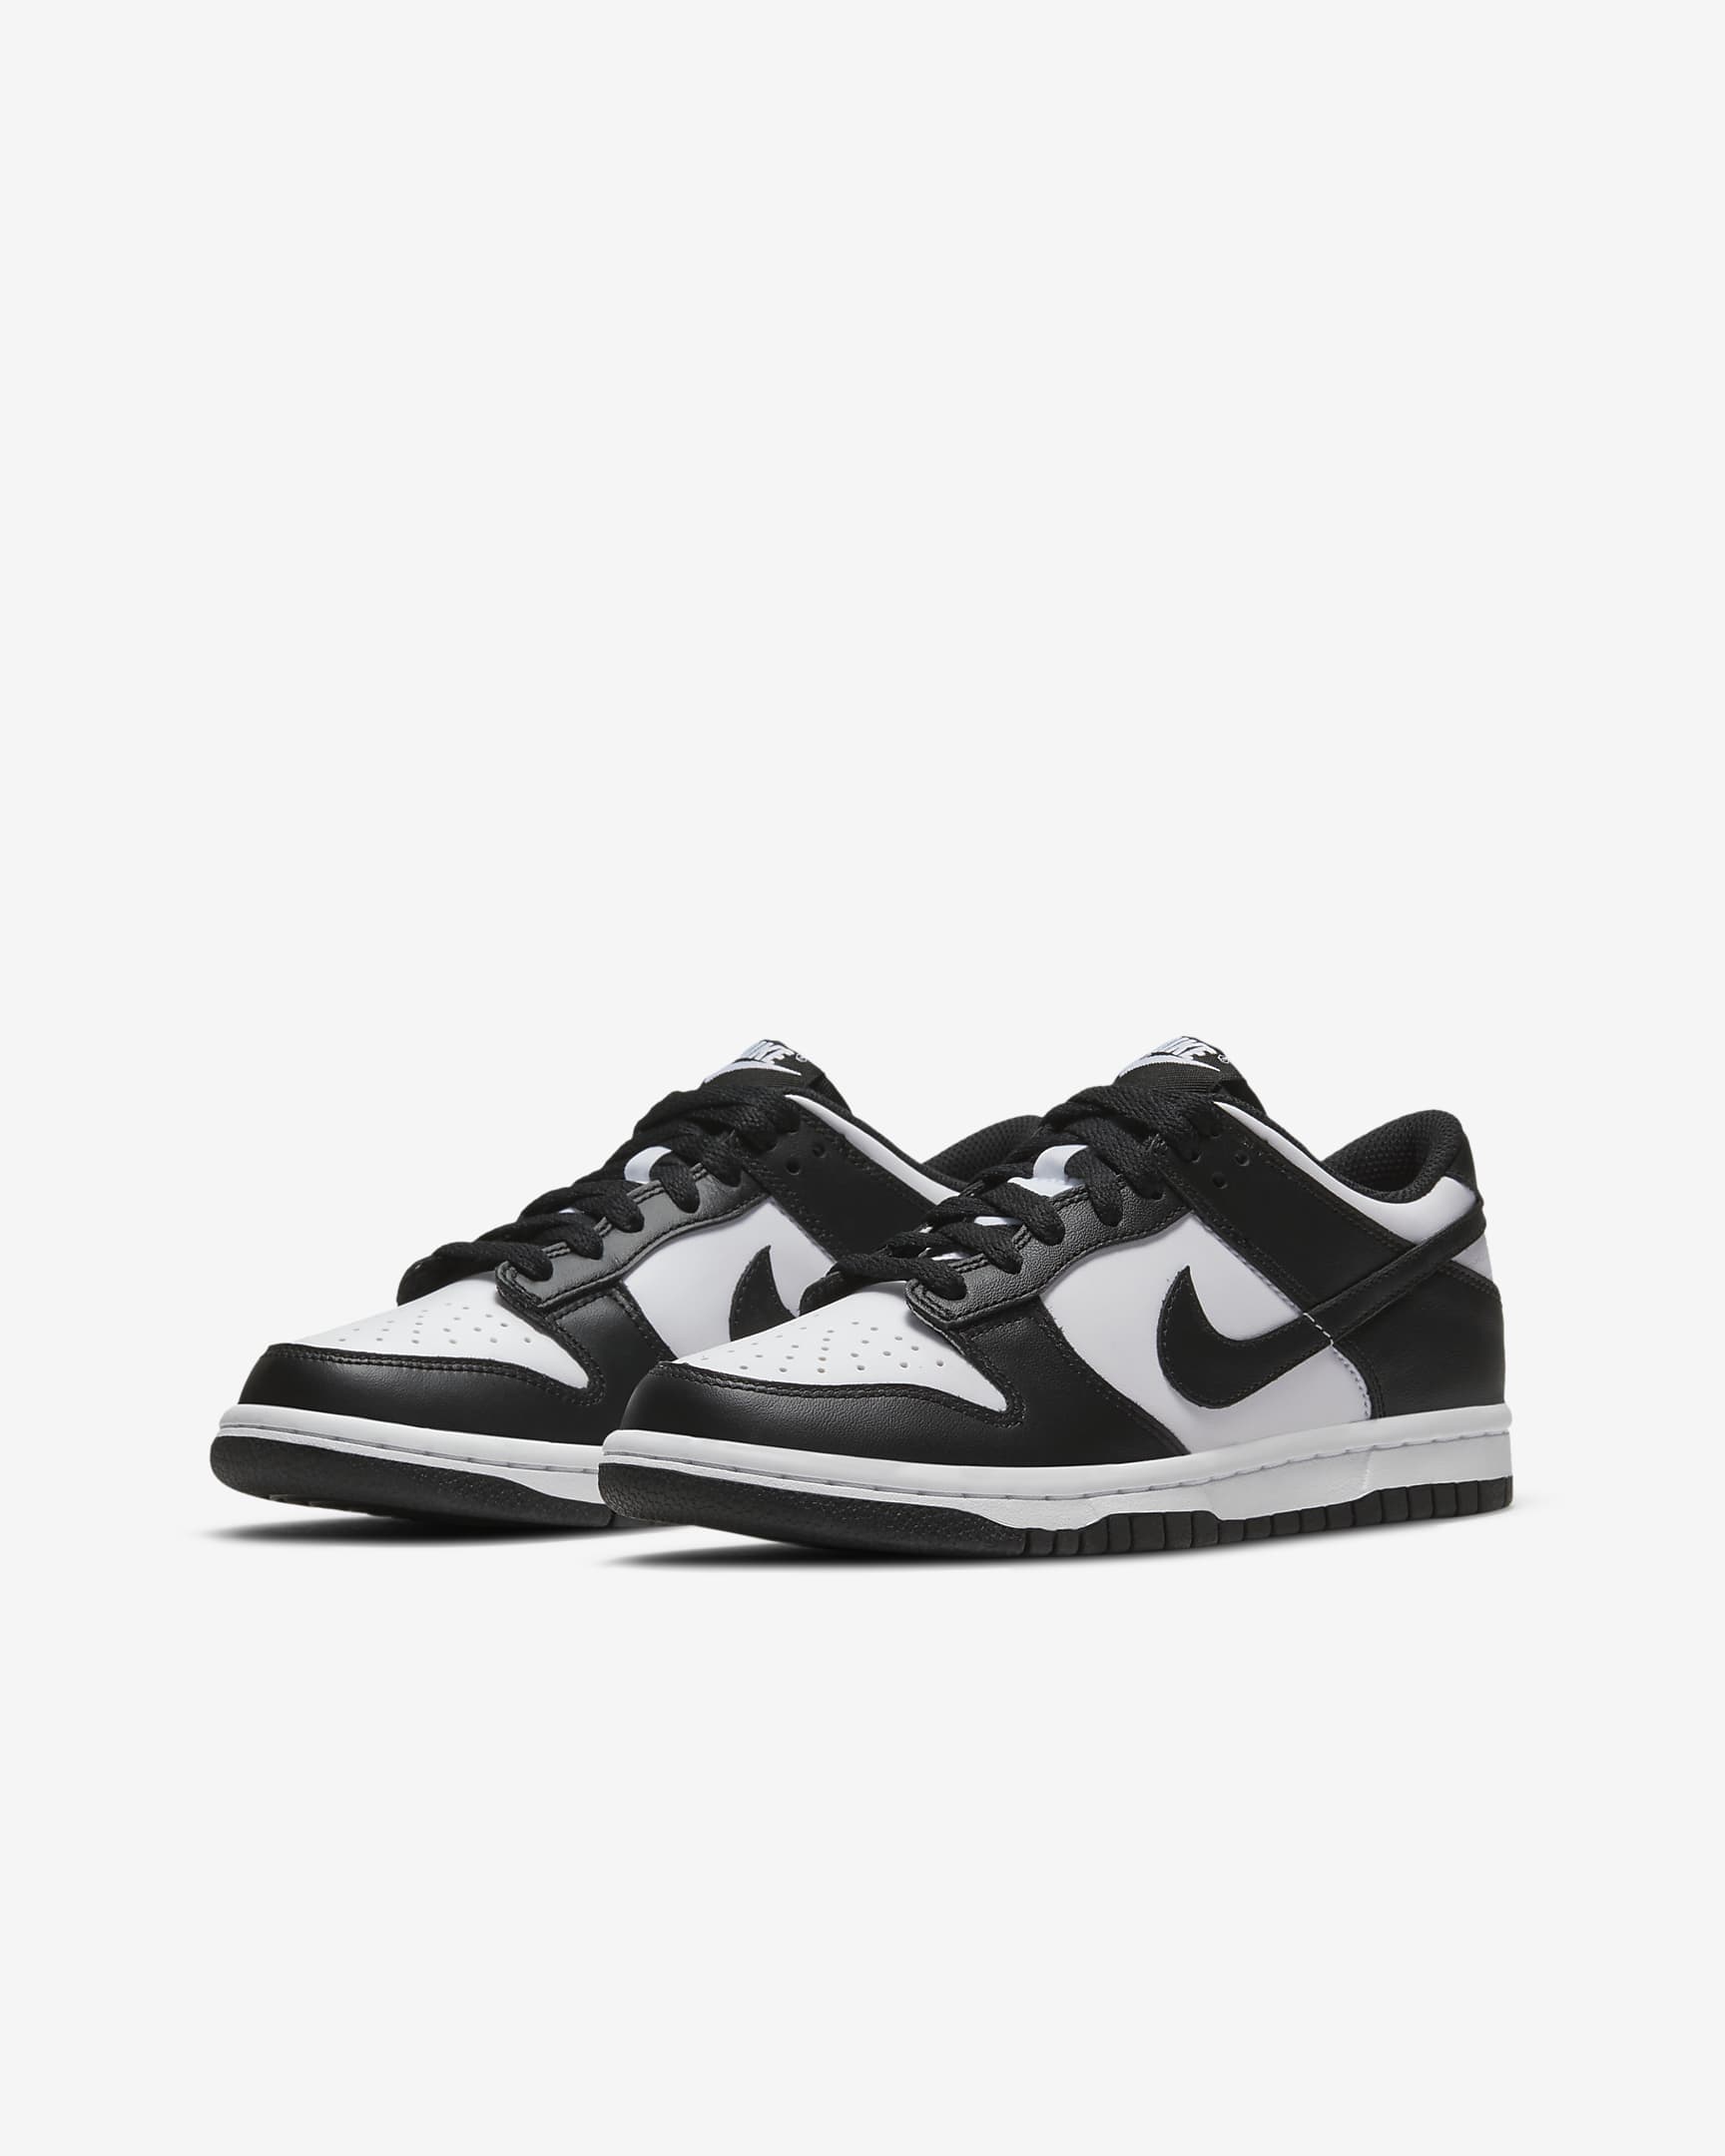 Nike Dunk Low Schuh für ältere Kinder - Weiß/Weiß/Schwarz